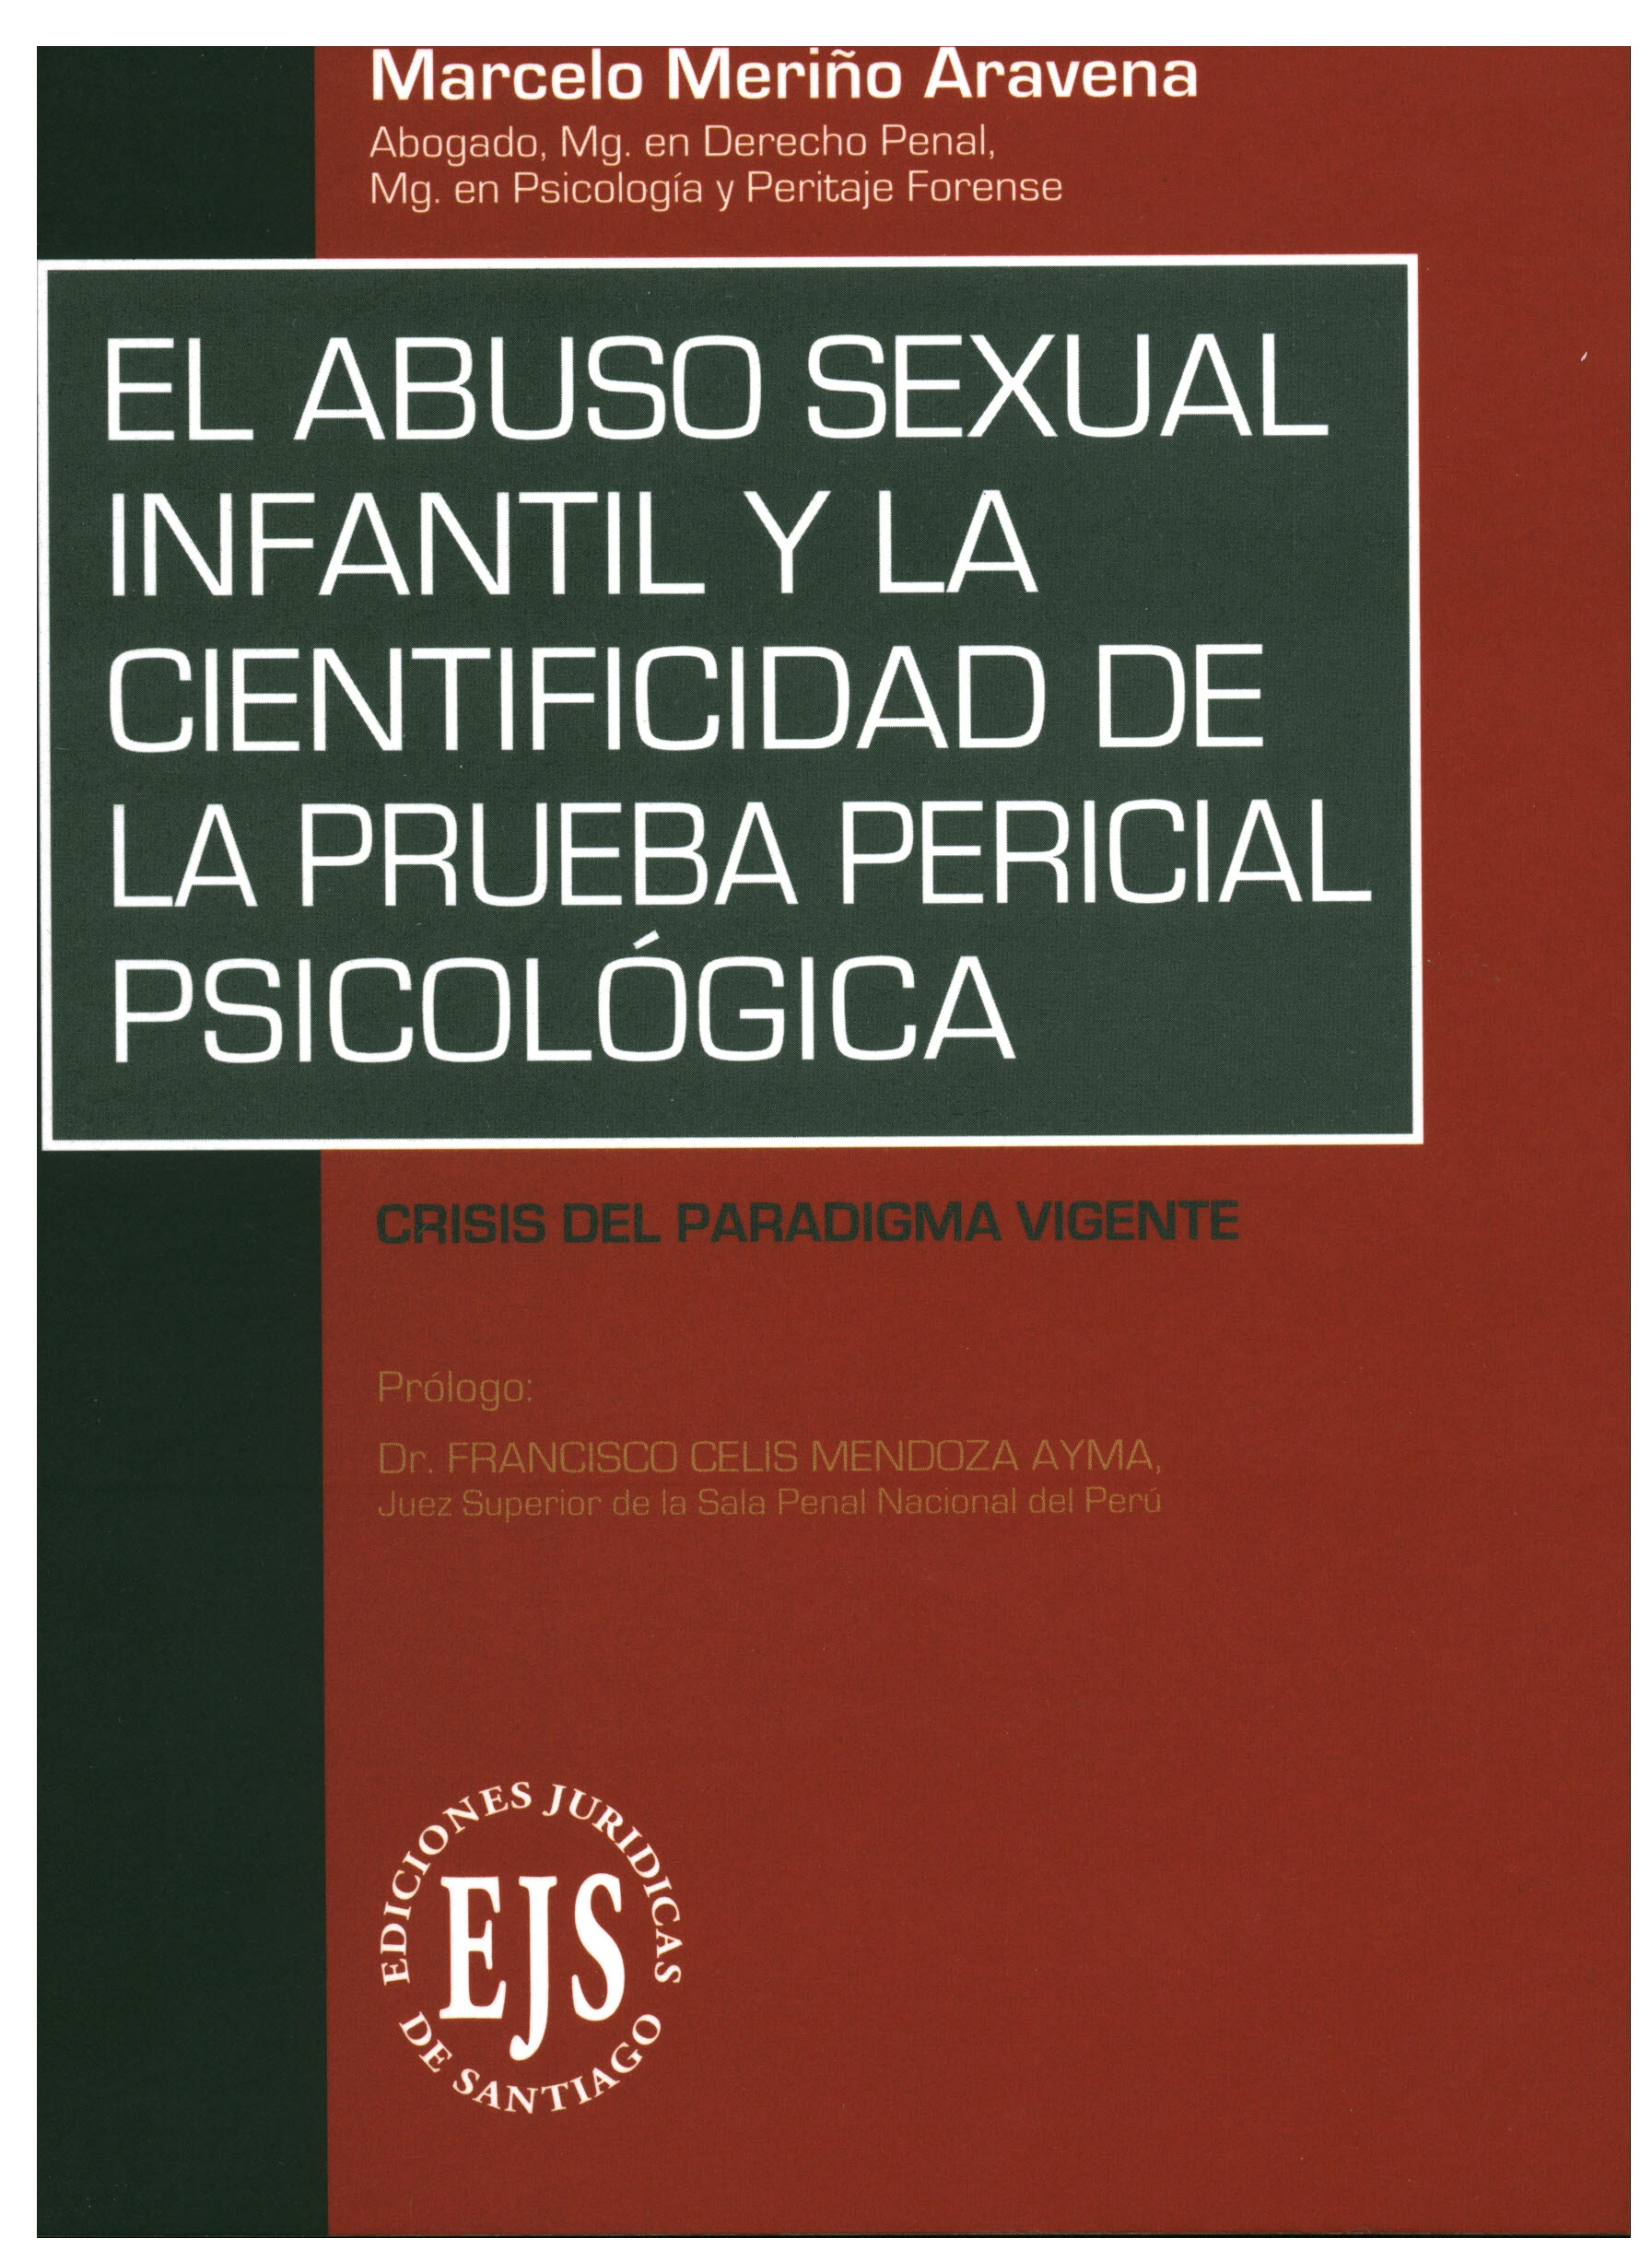 El abuso sexual infantil y la cientificidad de la prueba pericial psicológica. Crisis del paradigma vigente